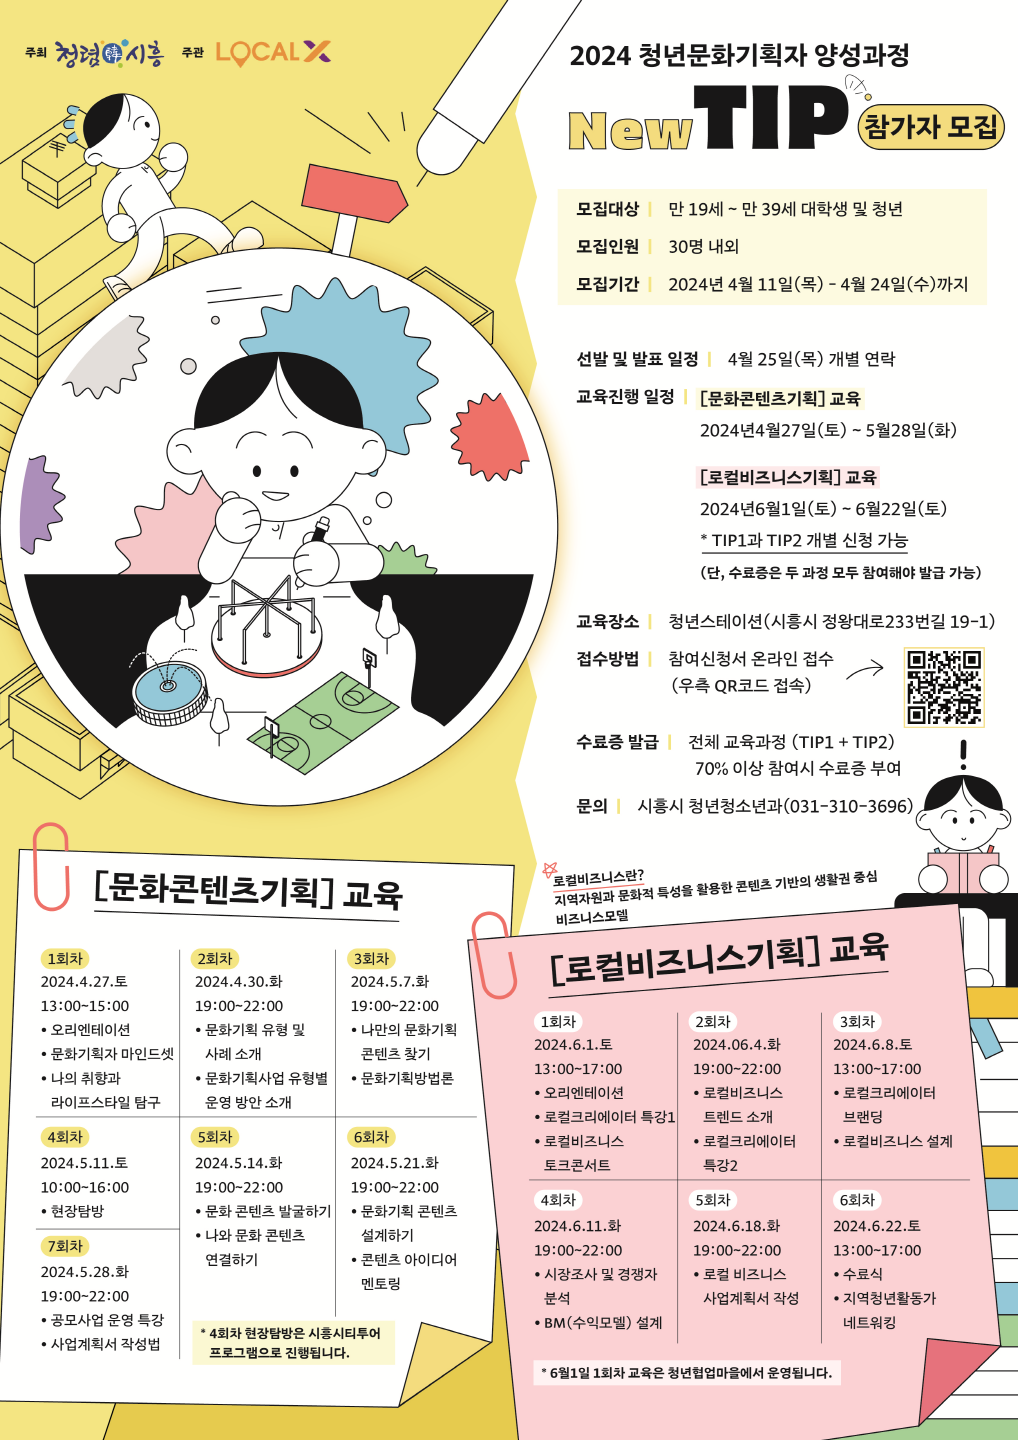 ▲ 시흥시 ‘2024 청년문화기획자 양성과정’ 참가자 모집(4월 24일까지)